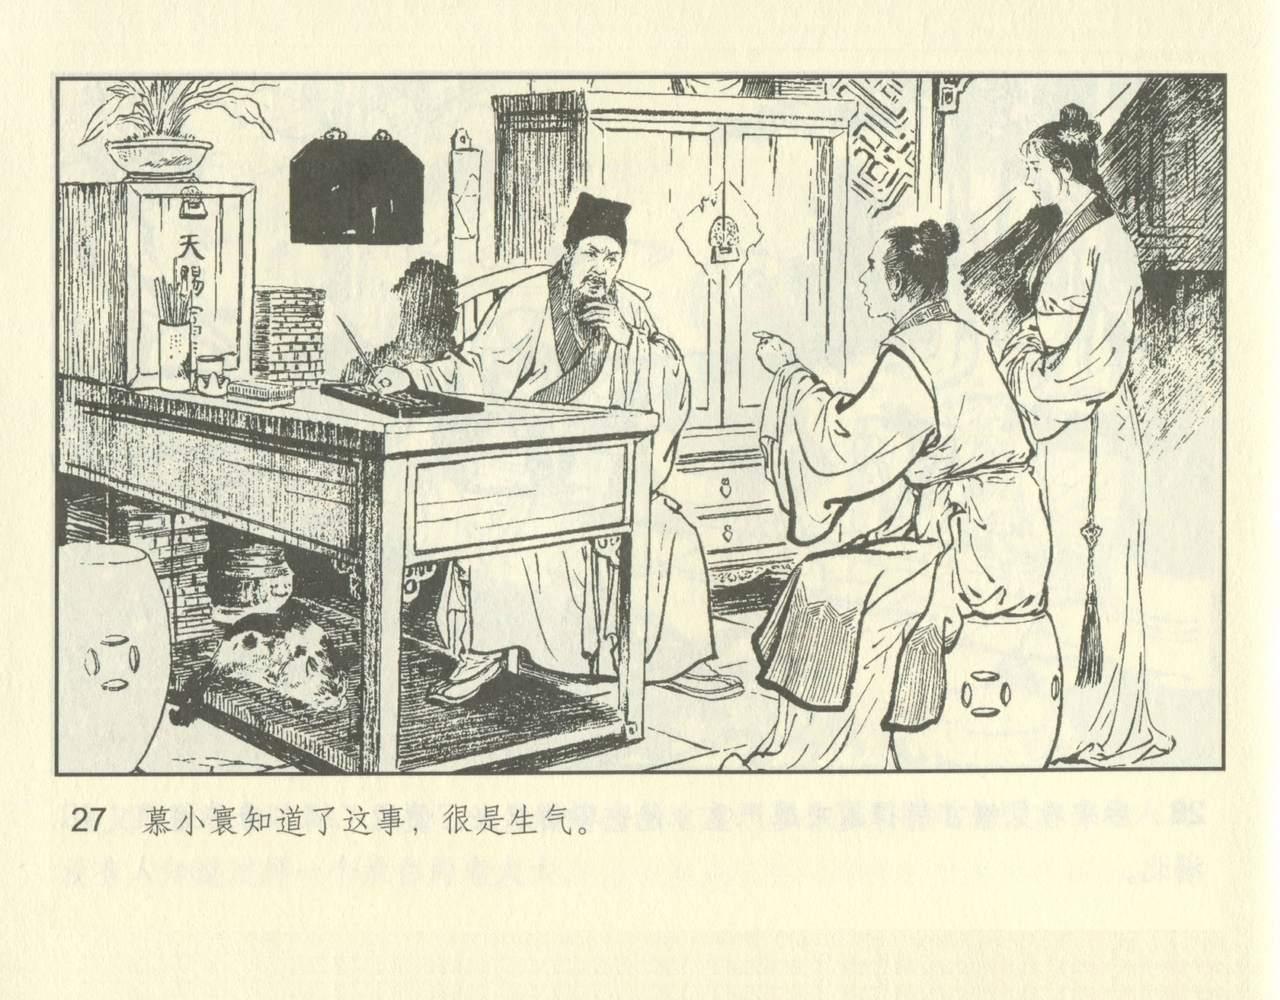 聊斋志异 张玮等绘 天津人民美术出版社 卷二十一 ~ 三十 76